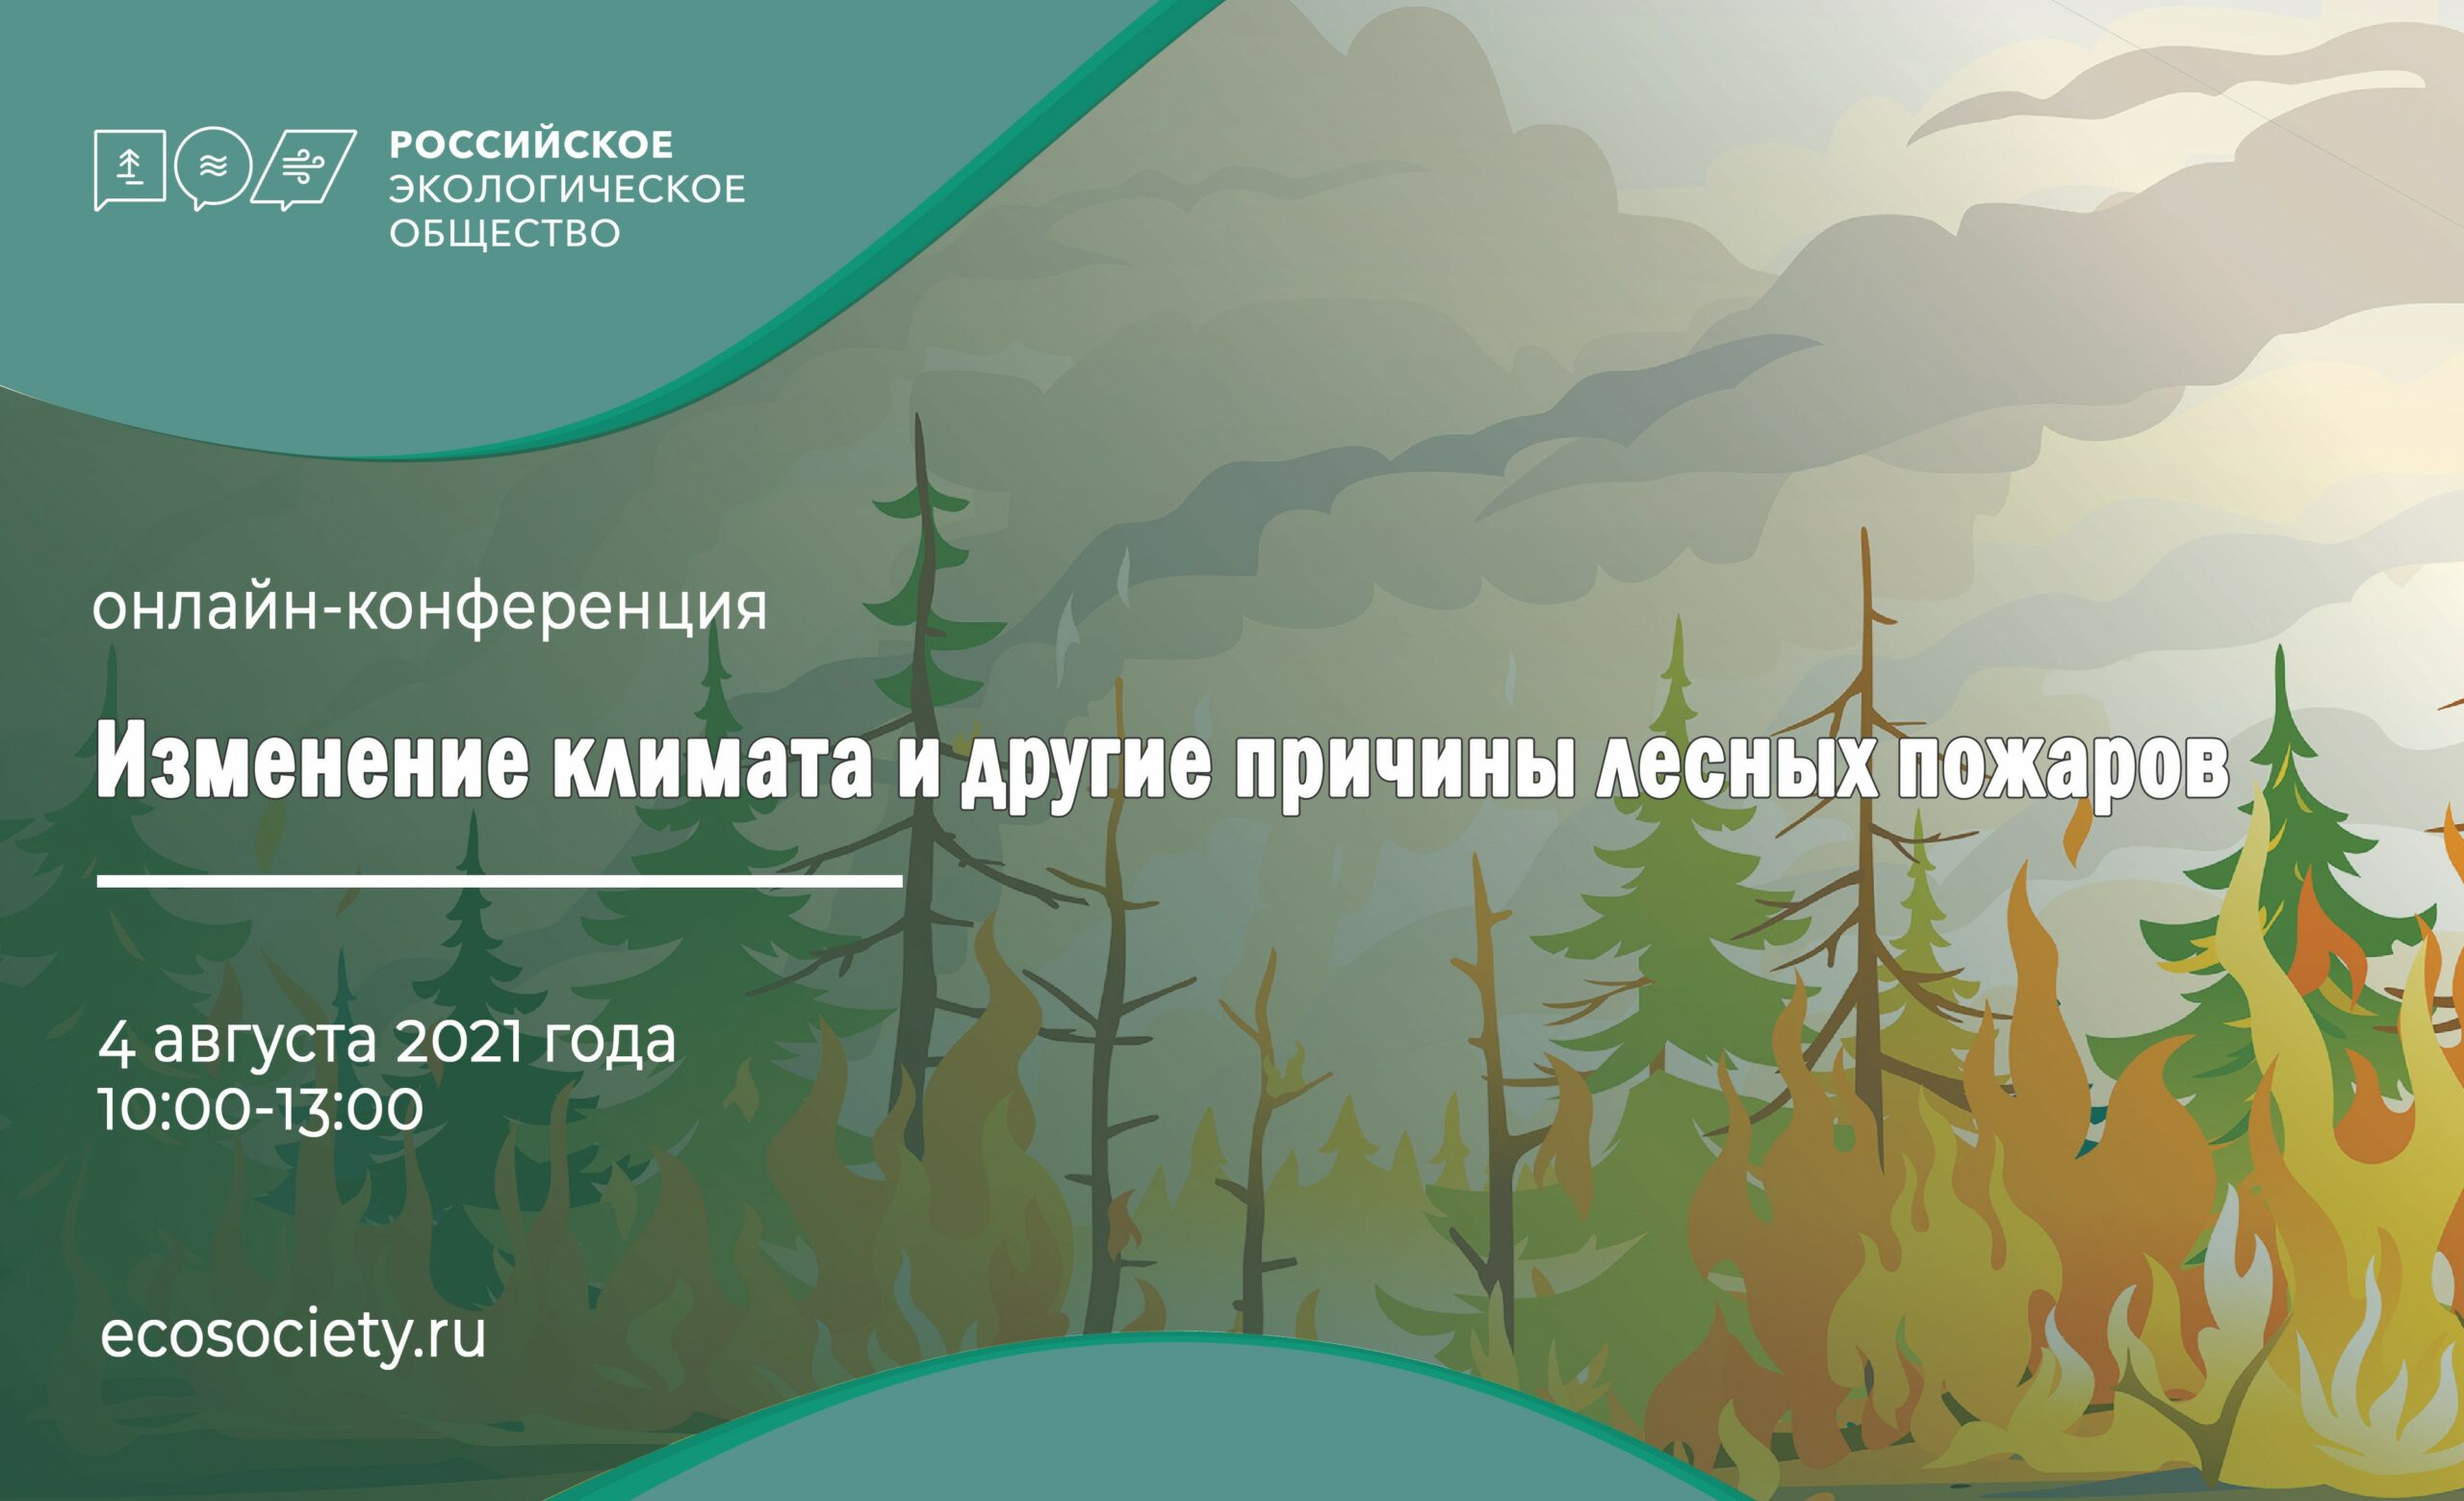 Пожары и их последствия обсудят в Российском экологическом обществе